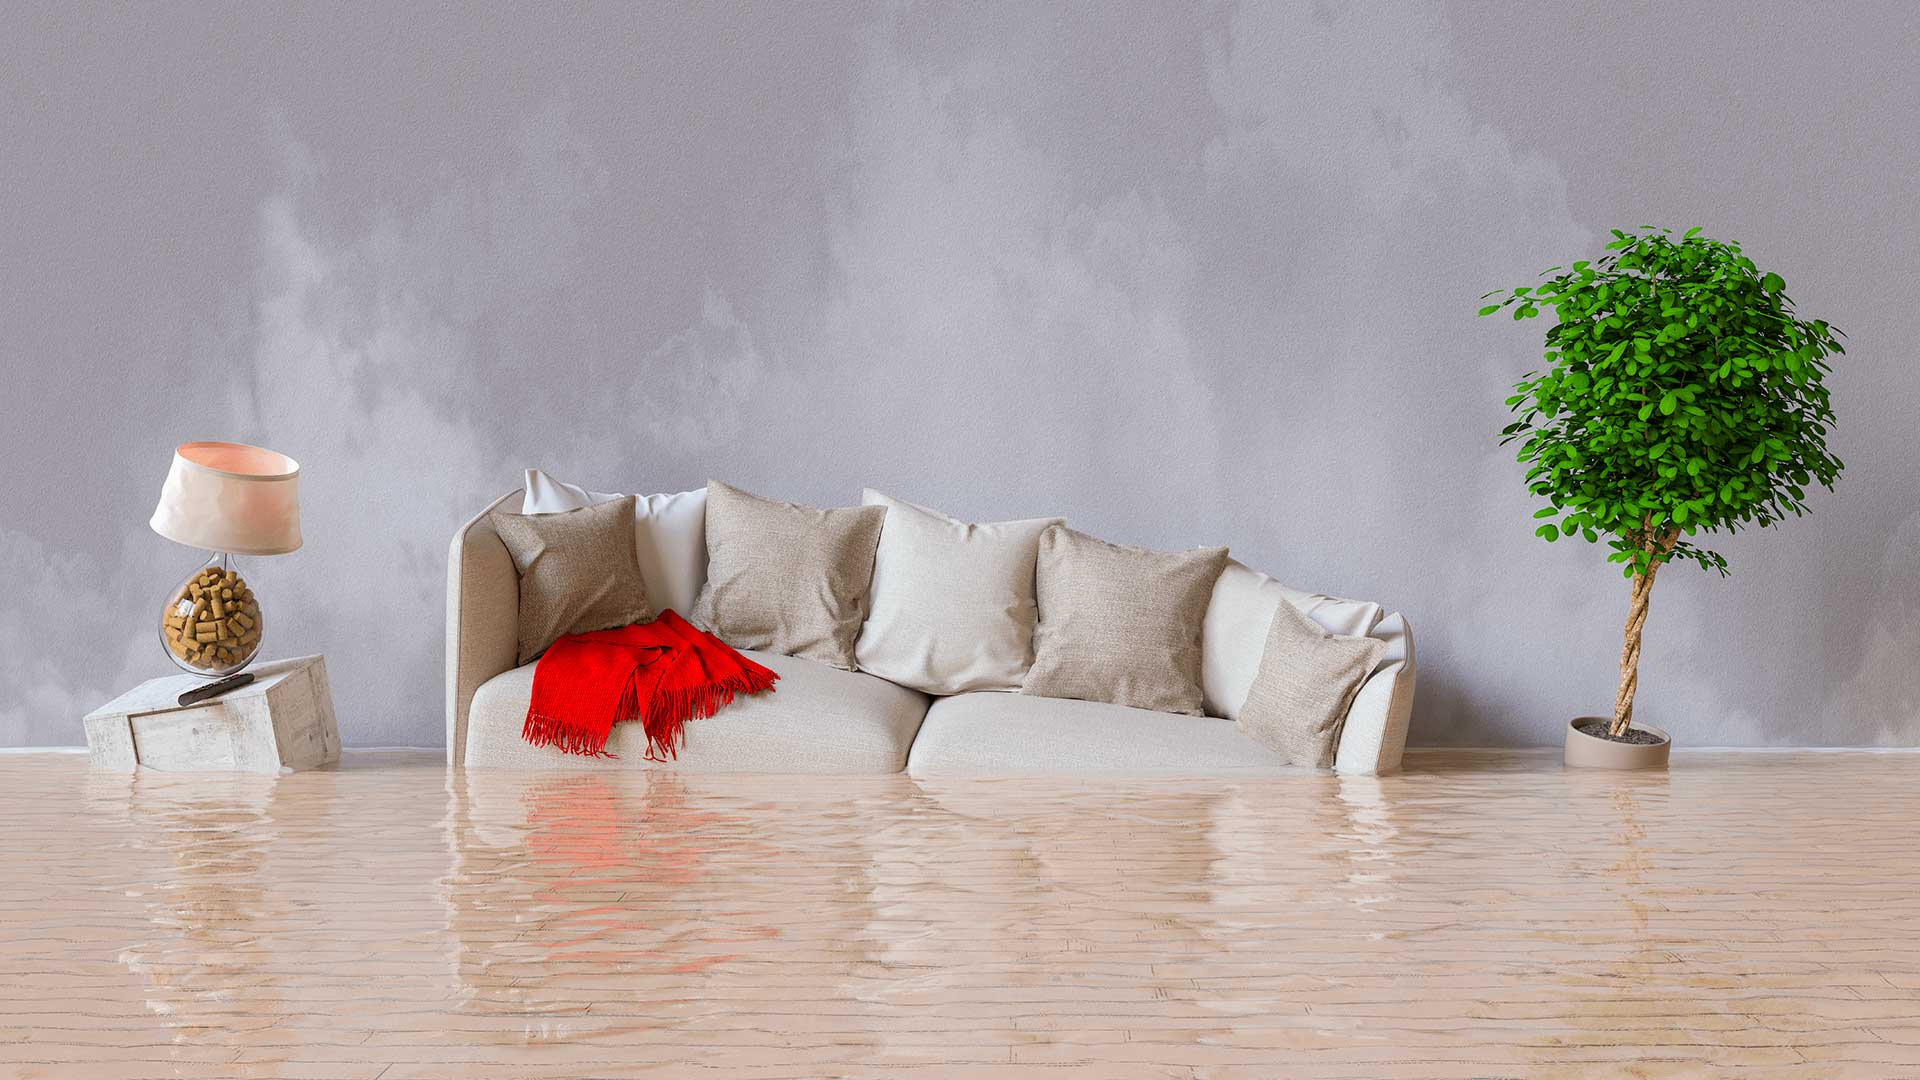 Daños por agua tras una inundación en la casa con muebles flotando.